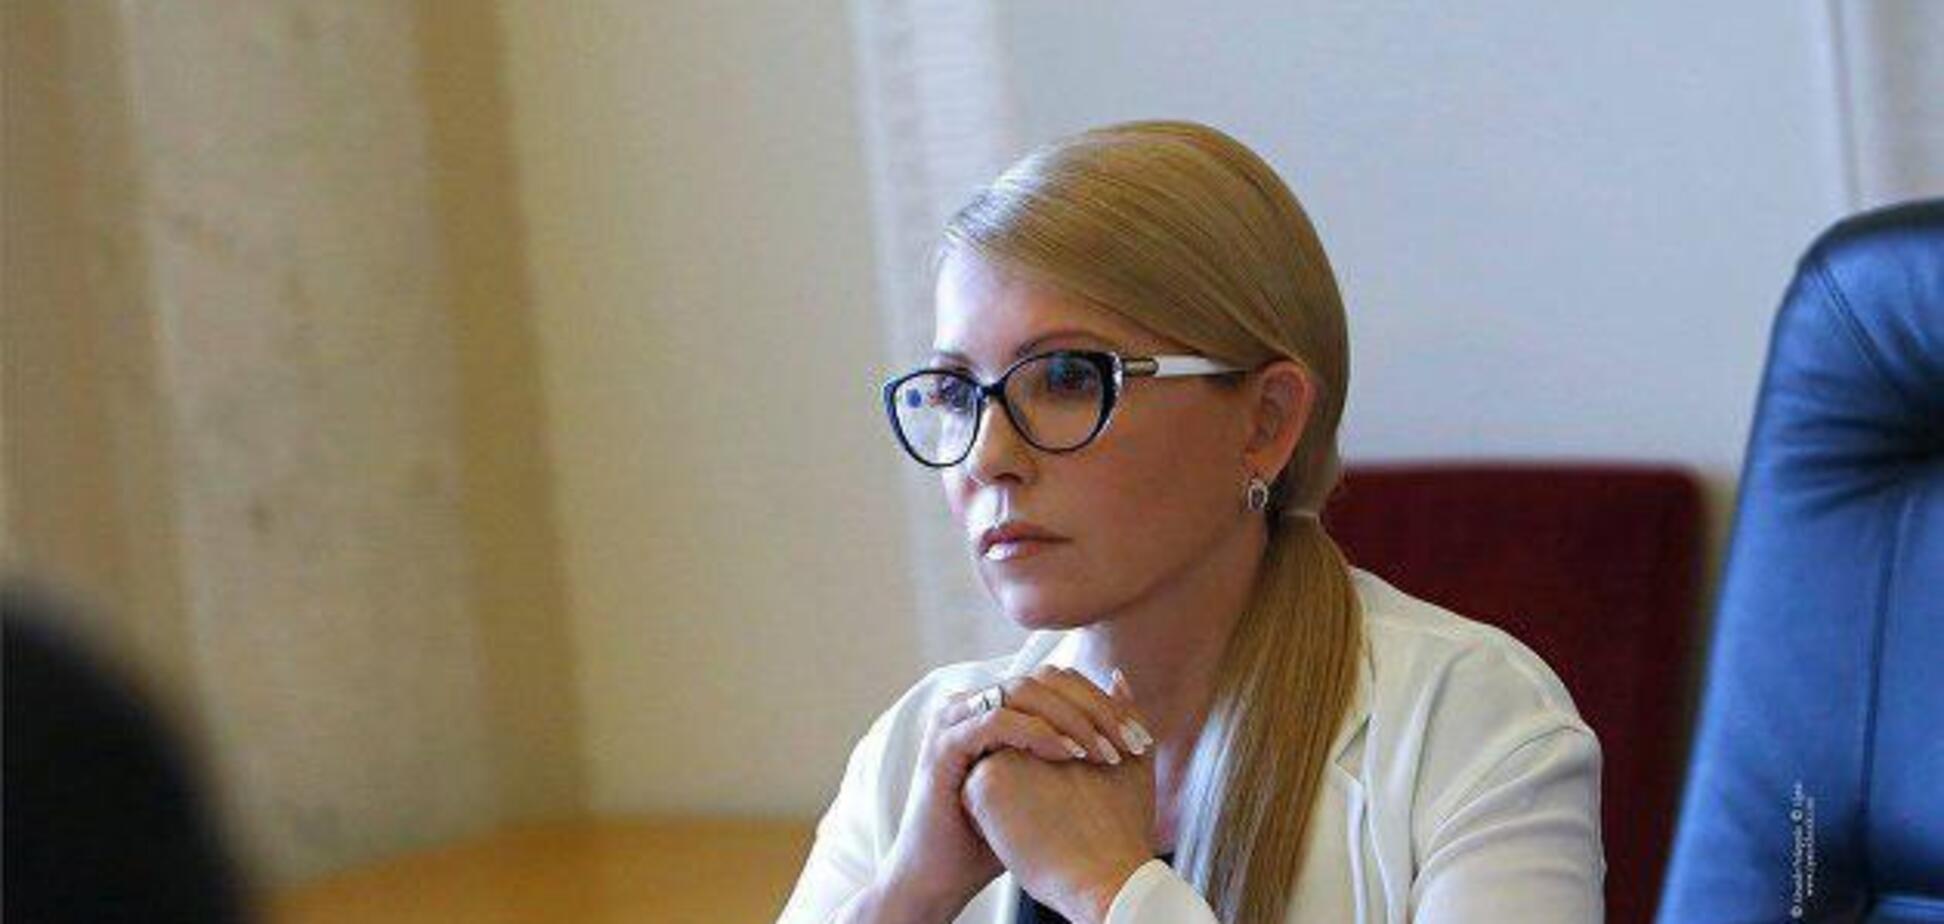 Тимошенко: в Україні все частіше нападають на активістів, але влада не реагує